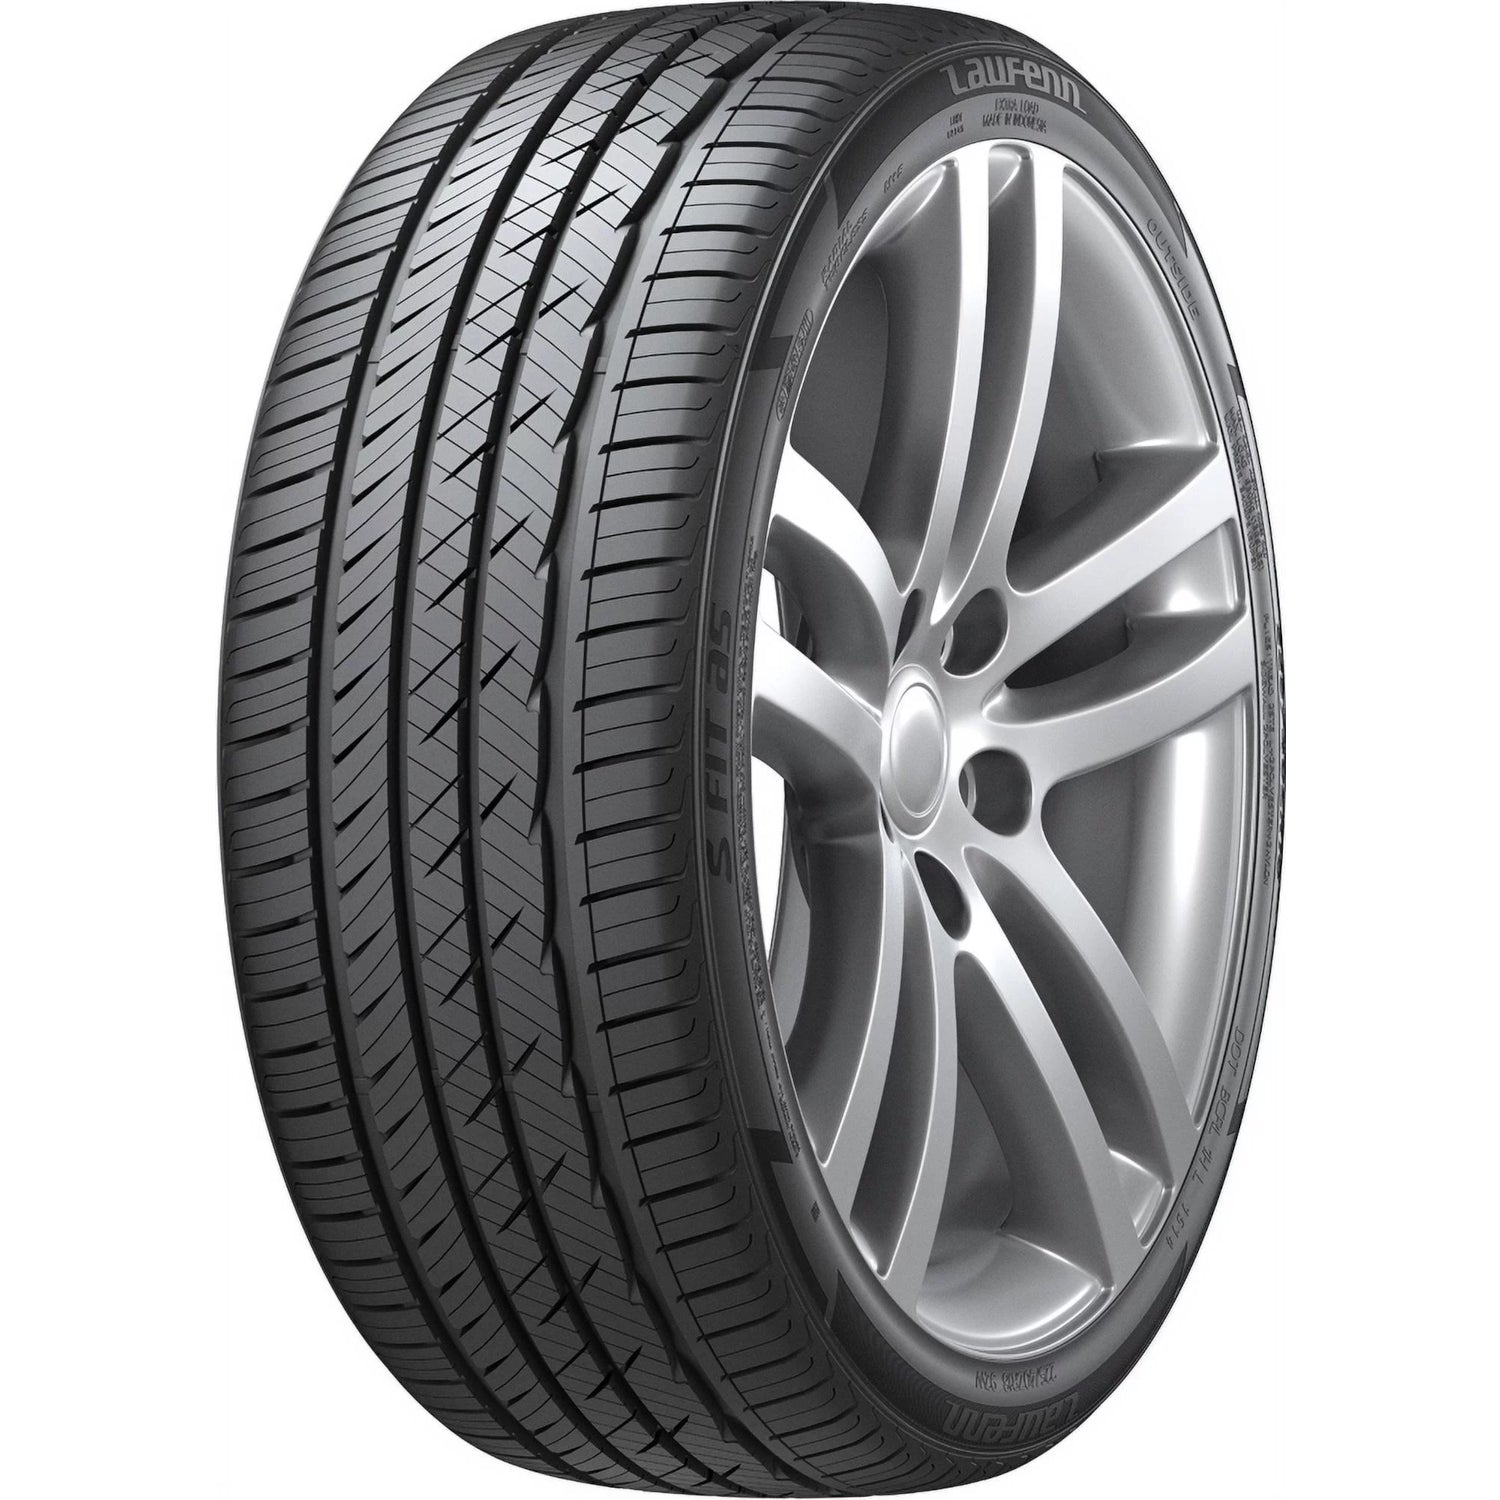 LAUFENN S FIT AS 255/40R18 (26X10R 18) Tires